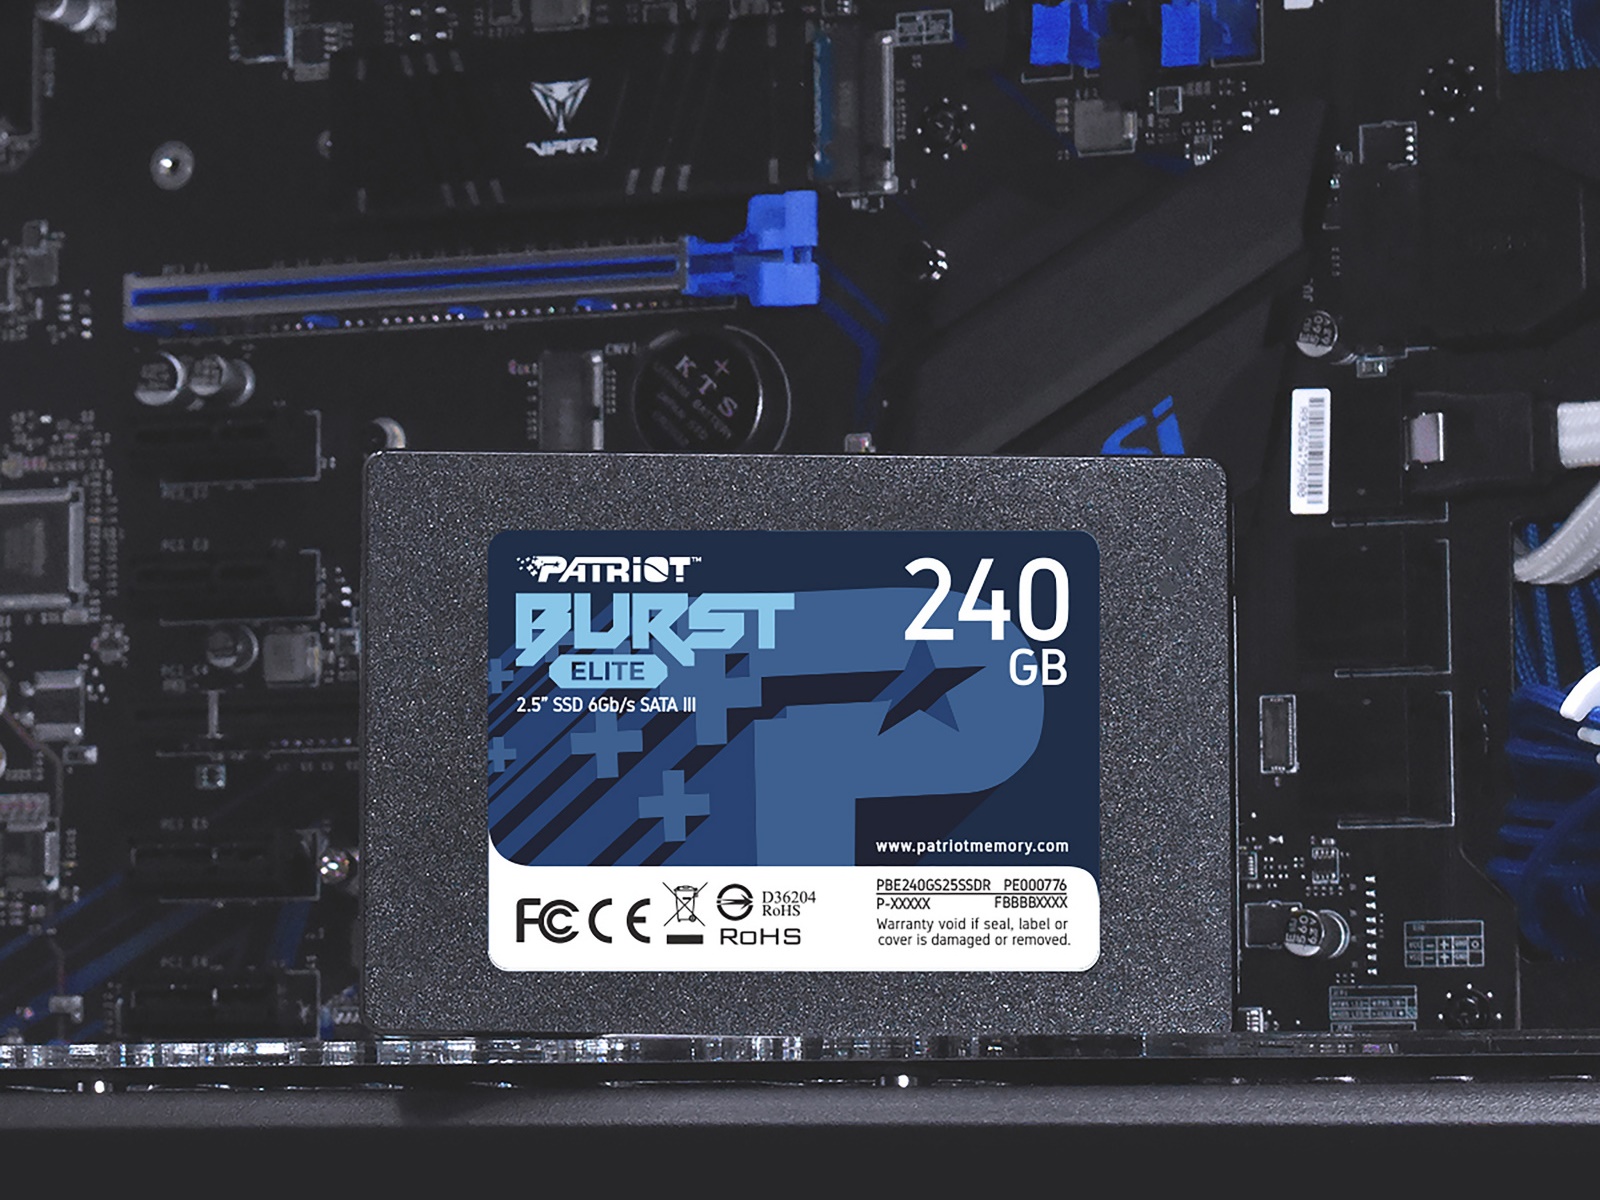 Intern SSD disk Patriot Burst Elite o kapacit 240 GB nabz vysok penosov rychlosti, aby zabrnil zpomalovn vkonu ze strany loit.